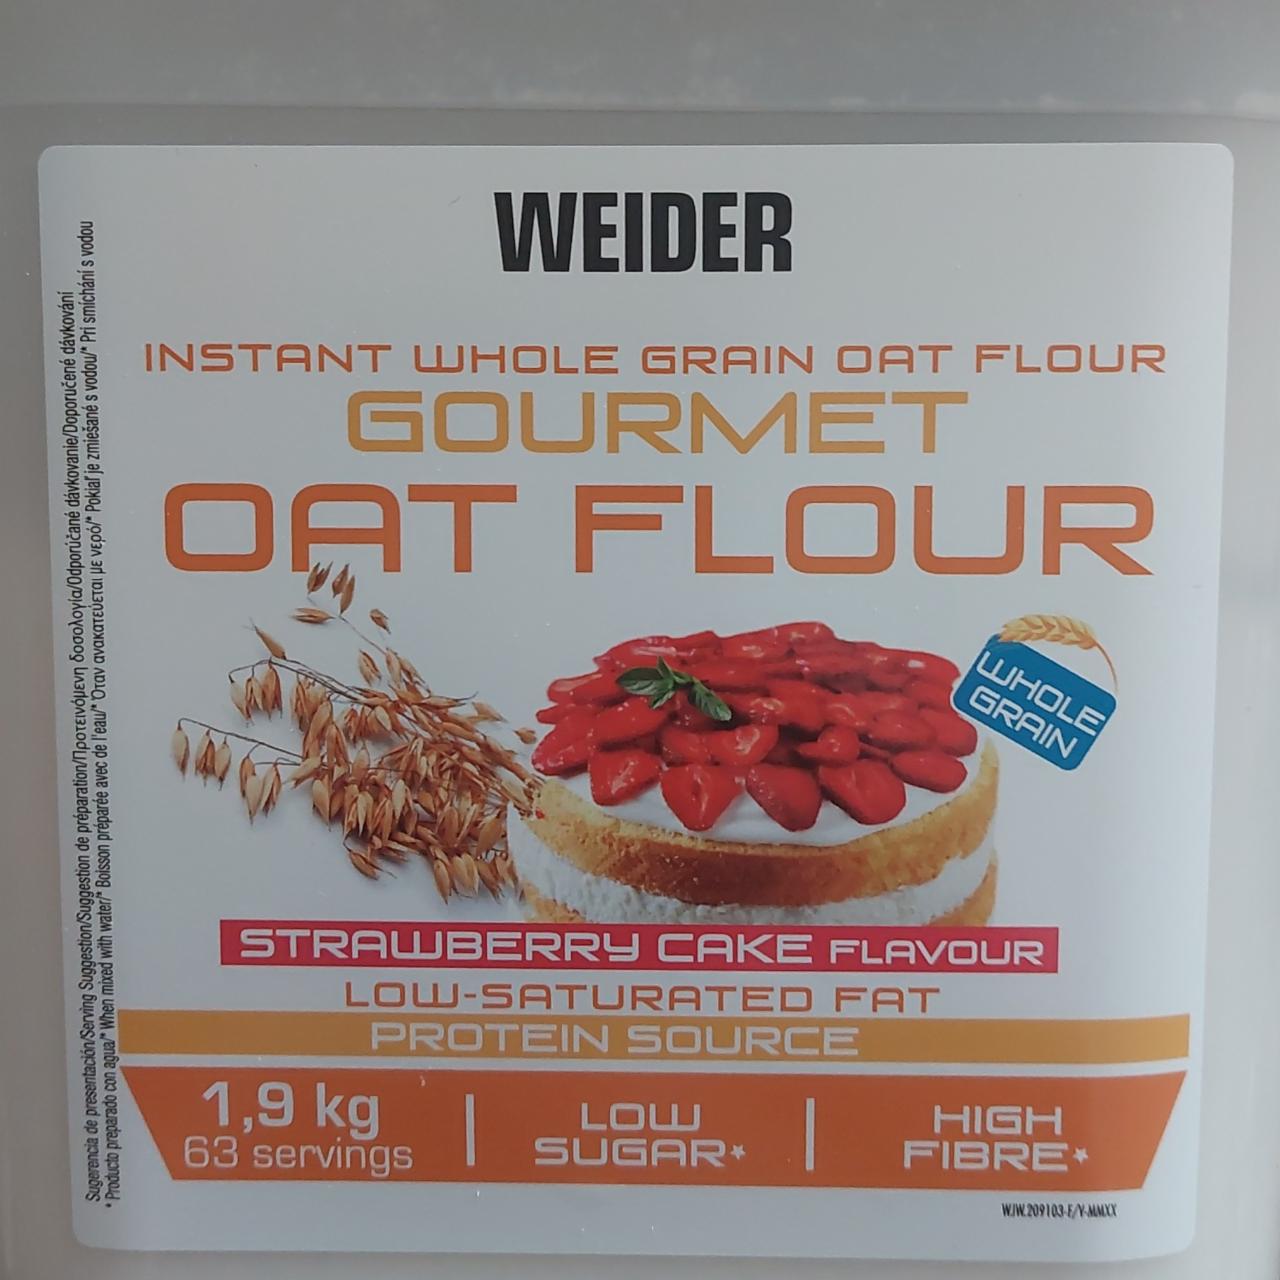 Fotografie - Instant whole grain oat flour Gourmet Oat flour Strawberry cake flavour Weider